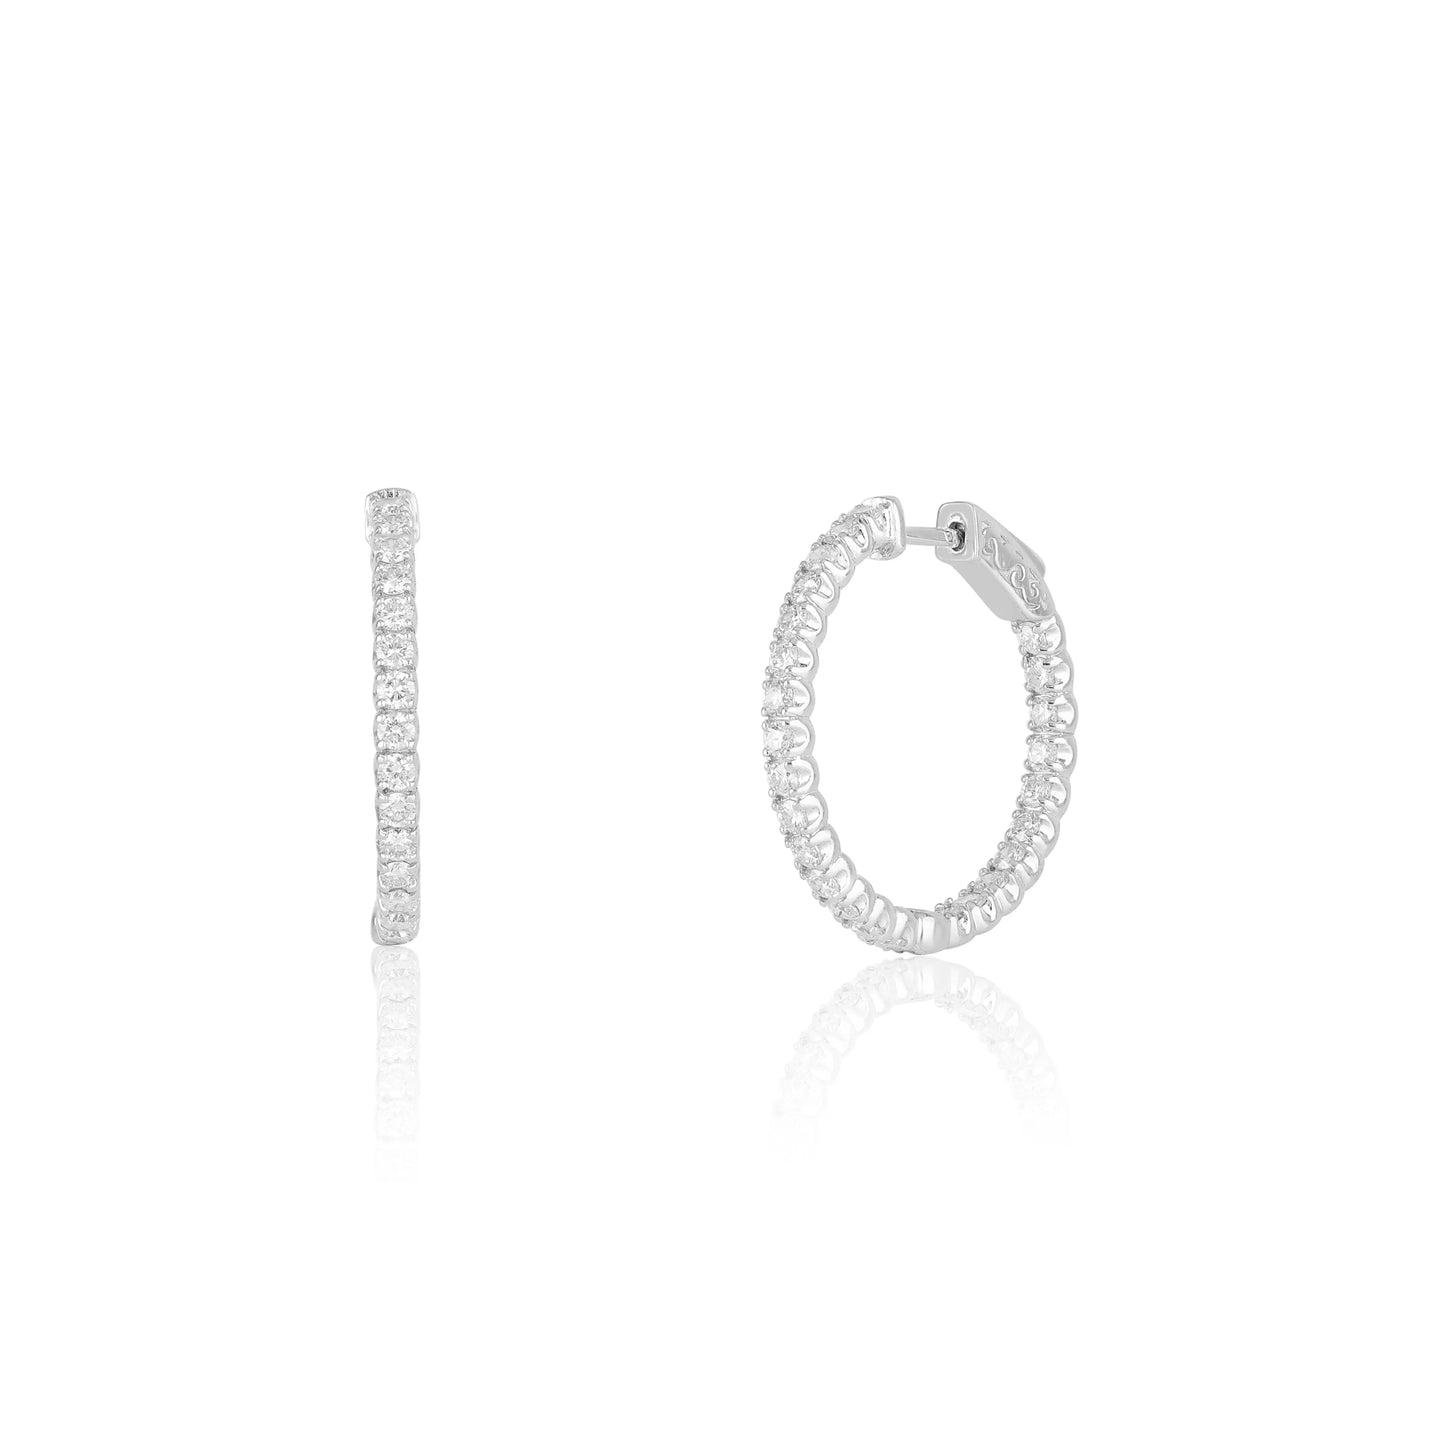 White Gold Earrings In And Out Diamond Hoop Earrings dansonjewelers Danson Jewelers 